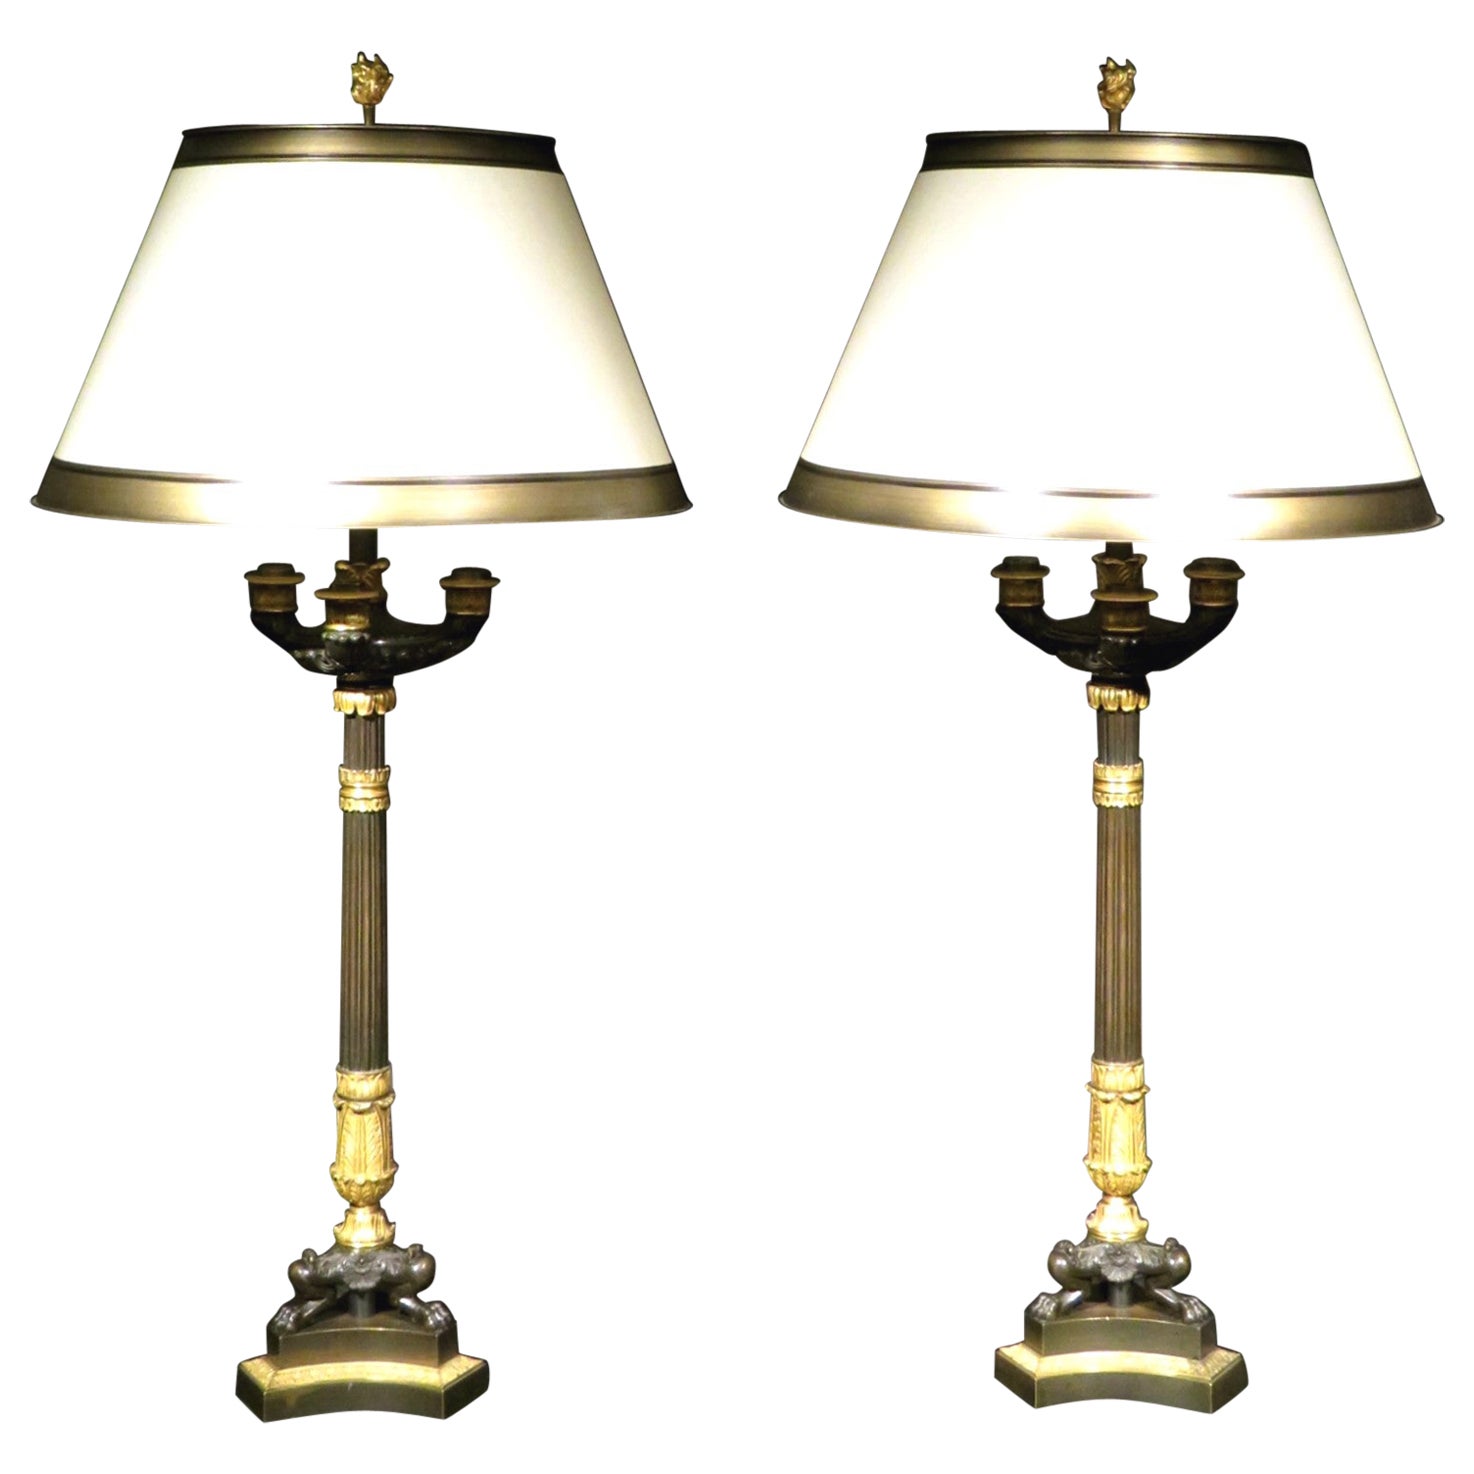 Ein sehr schönes Paar Empire-Kandelaber/Lampen aus vergoldeter Bronze, teilweise vergoldet, mit drei Lichtern